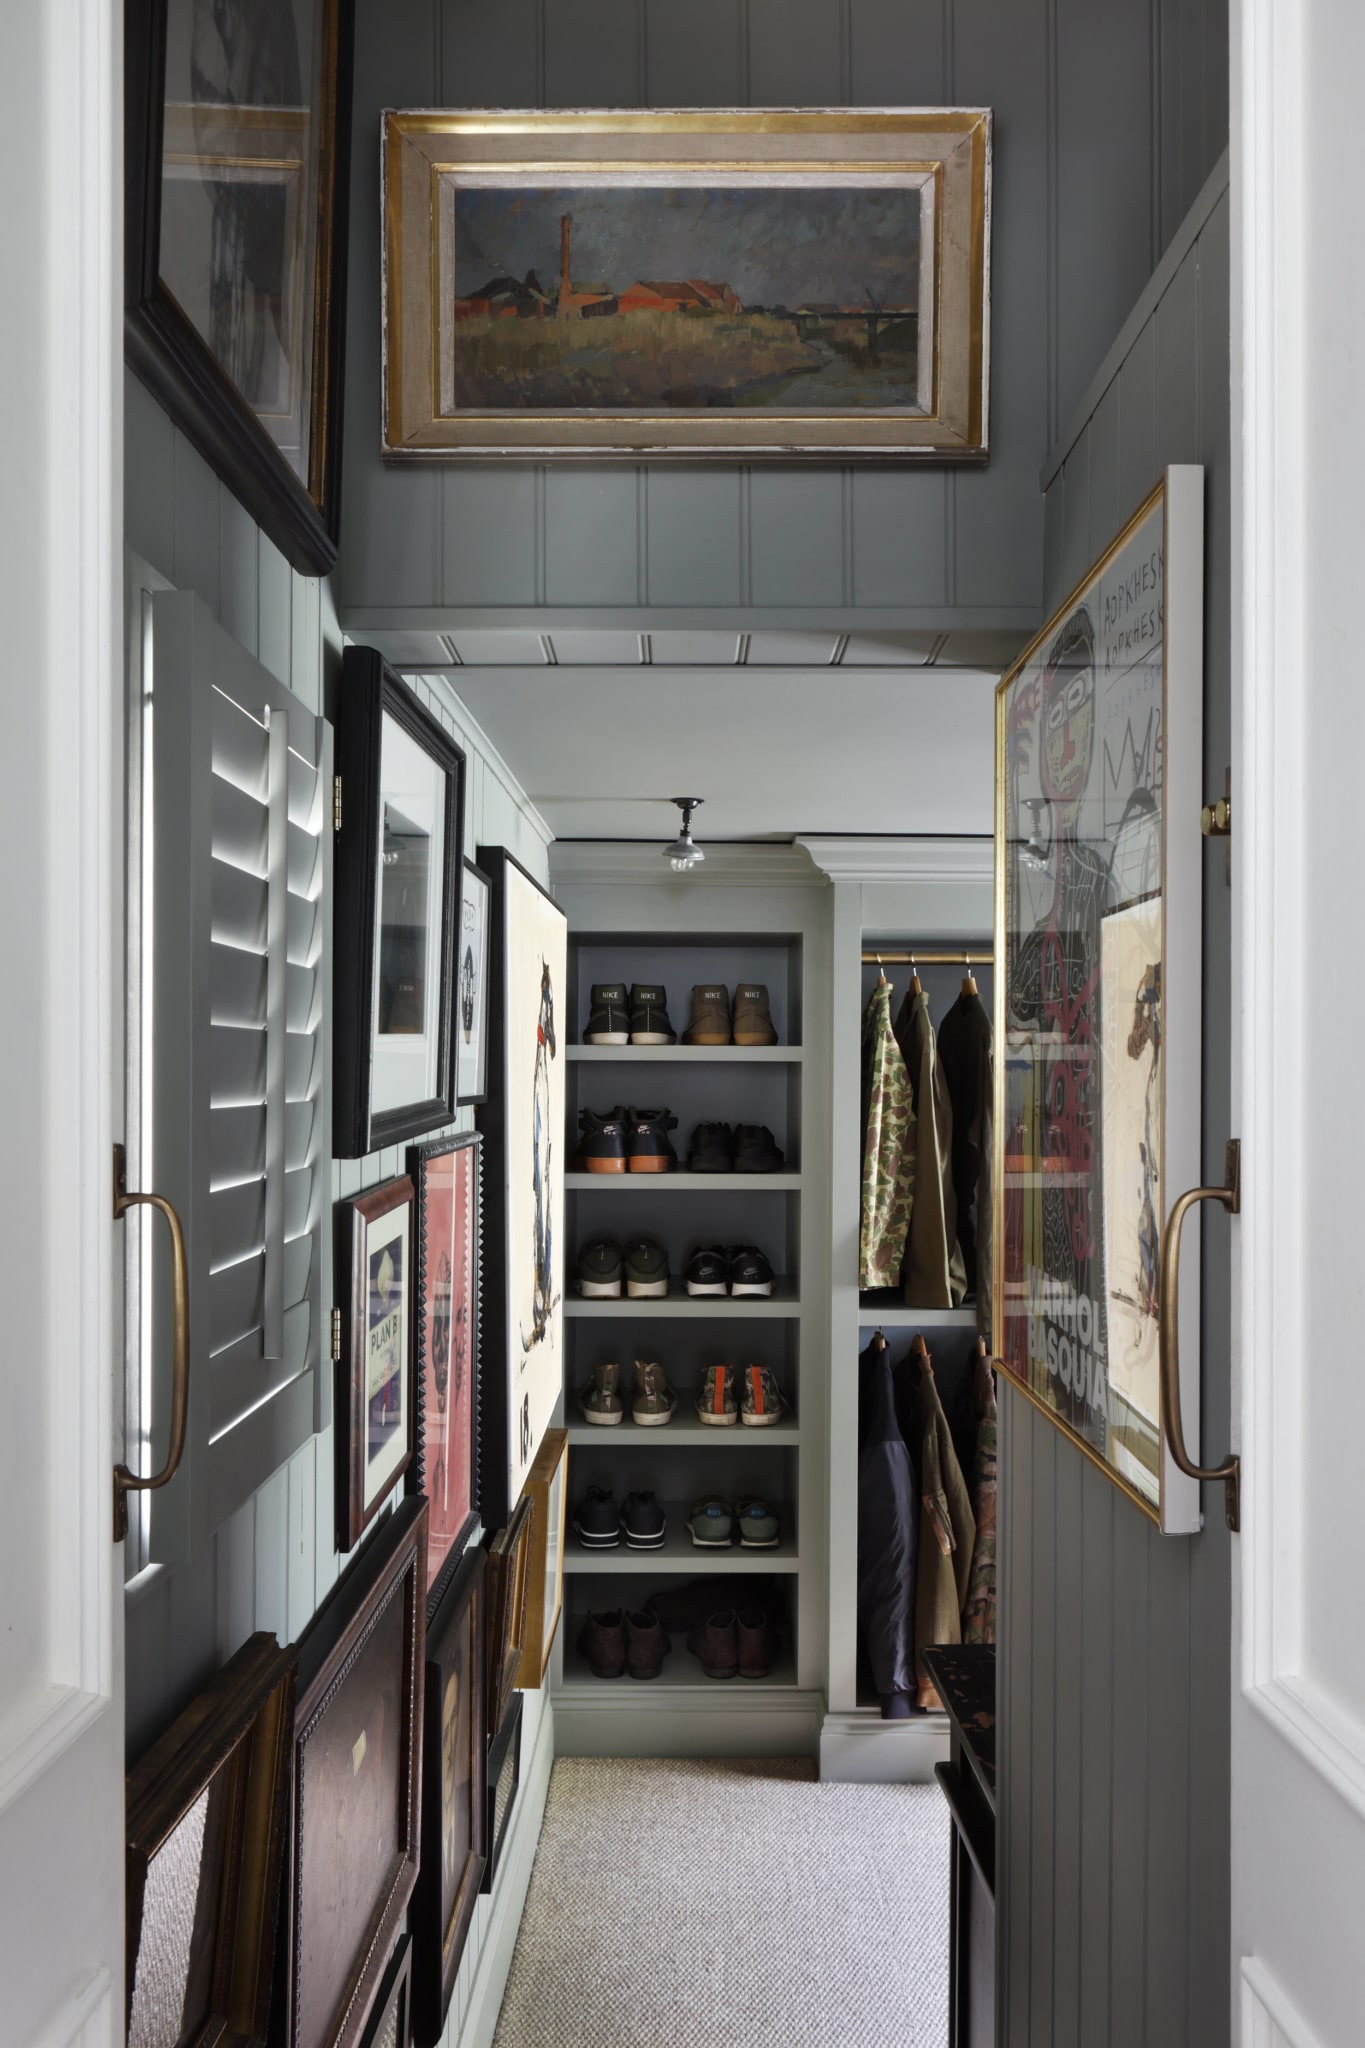 HÁM INTERIORS - closet - closet design - closet organization - closet makeover - gallery wall ---London designer